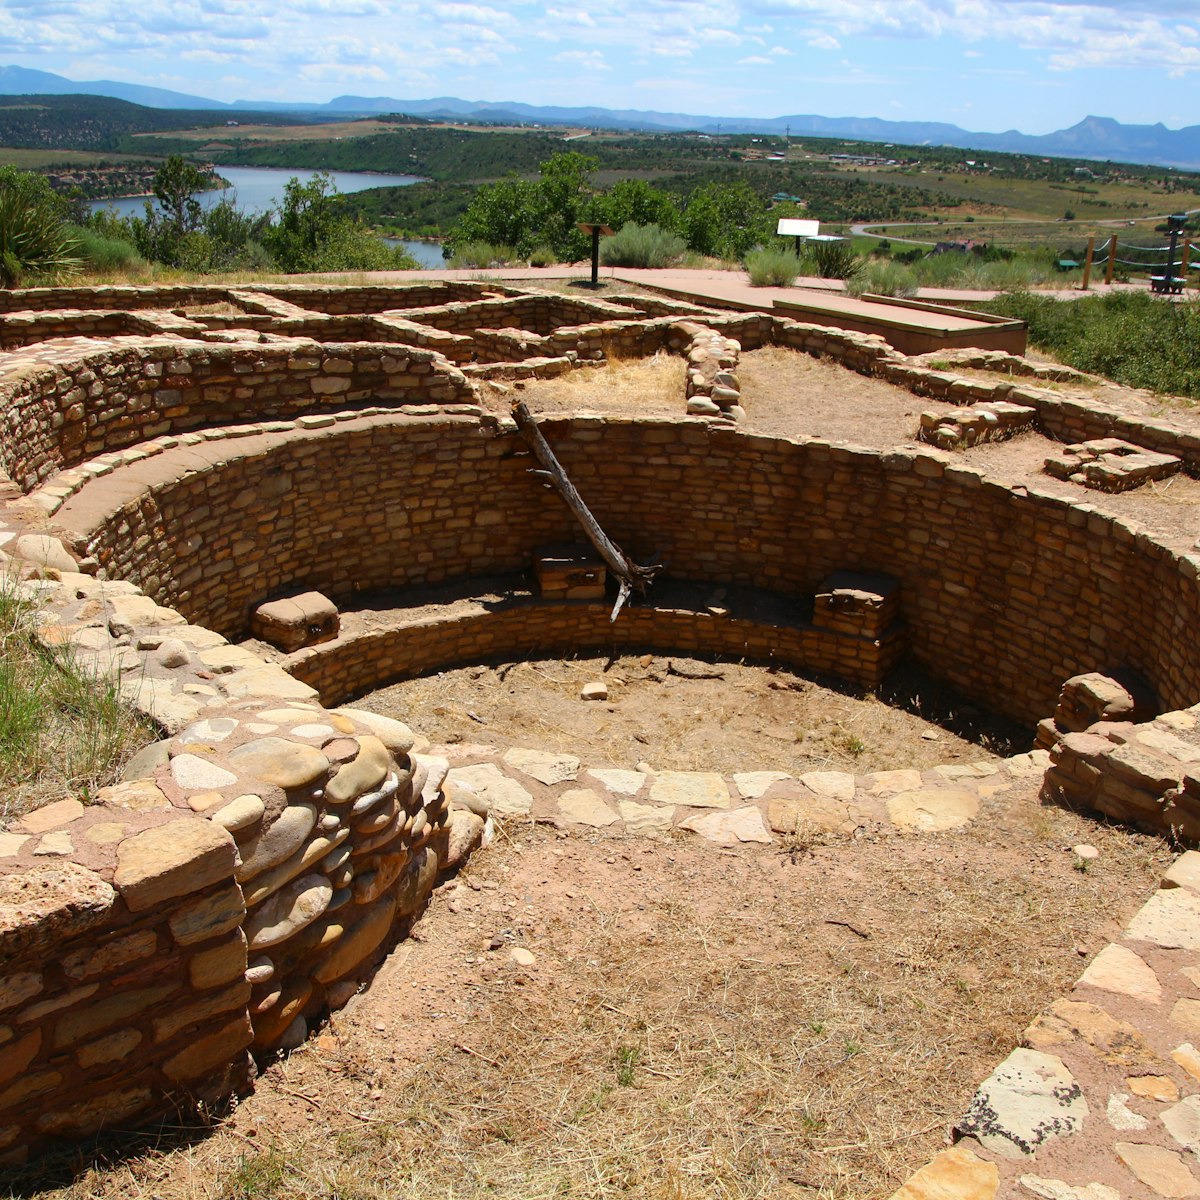 Anasazi Ruins at Anasazi Heritage Center in Dolores, Colorado.